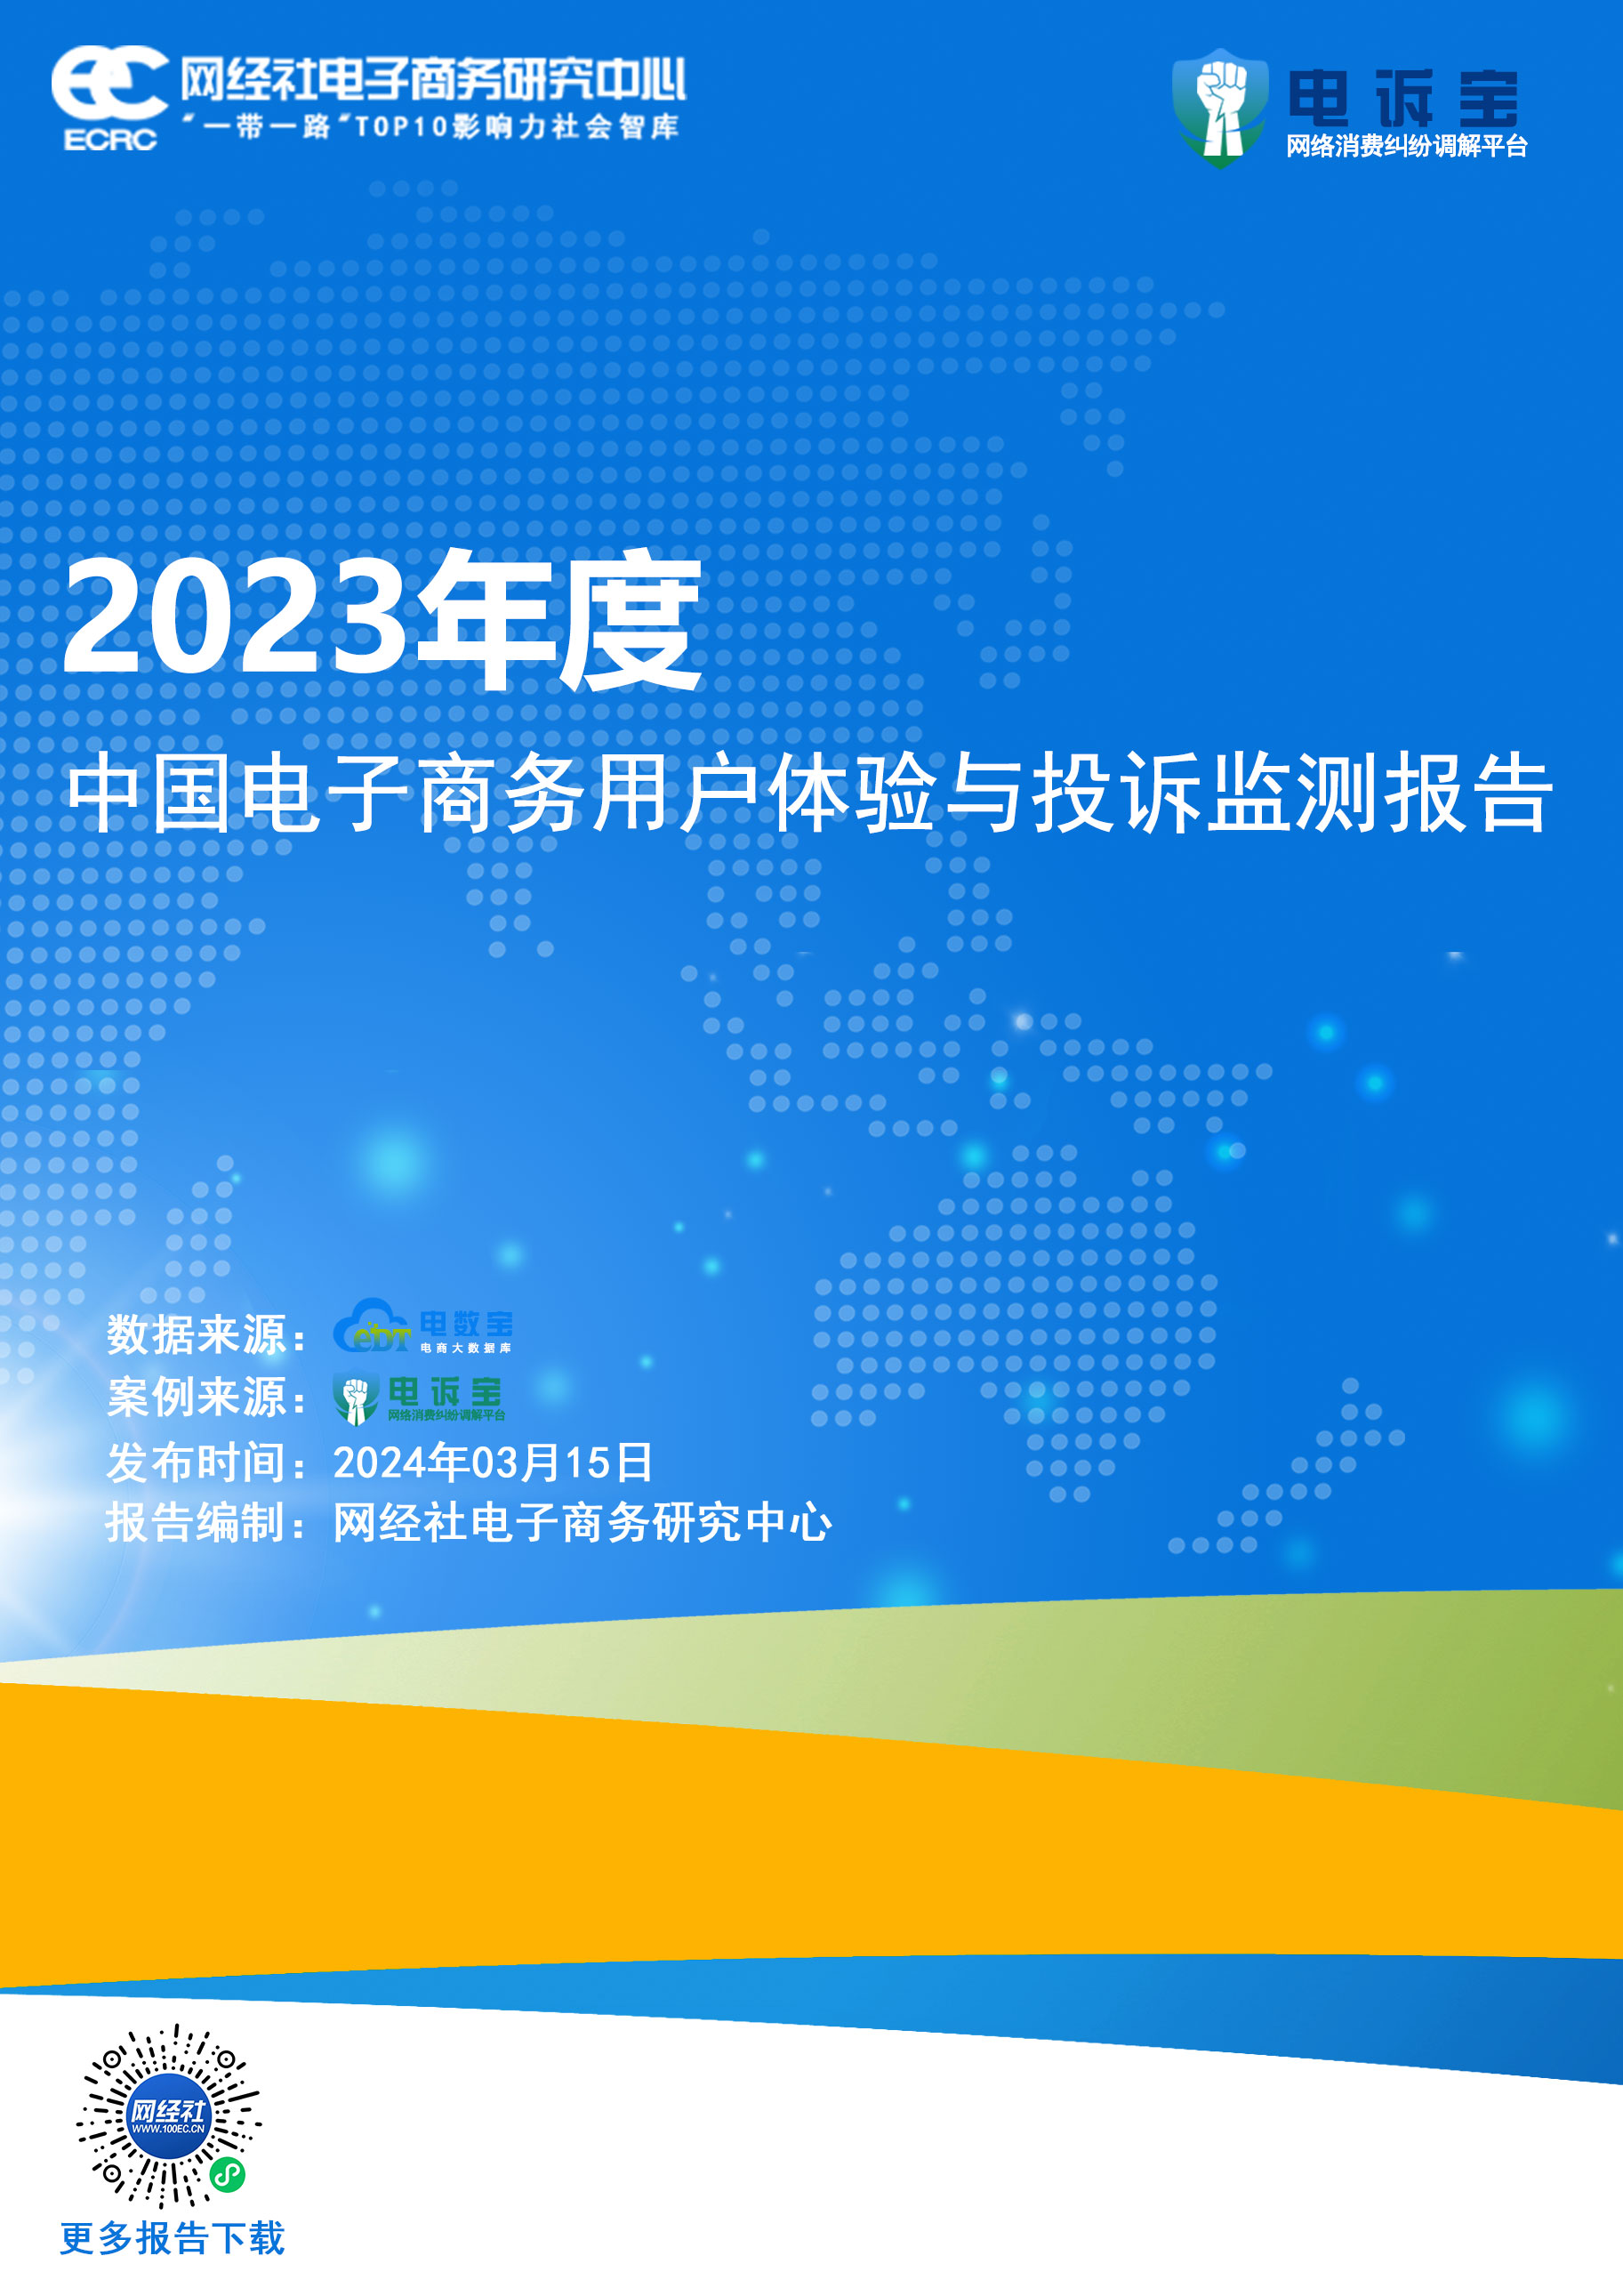 《2023年度中国电子商务用户体验与投诉监测报告》(1).jpg